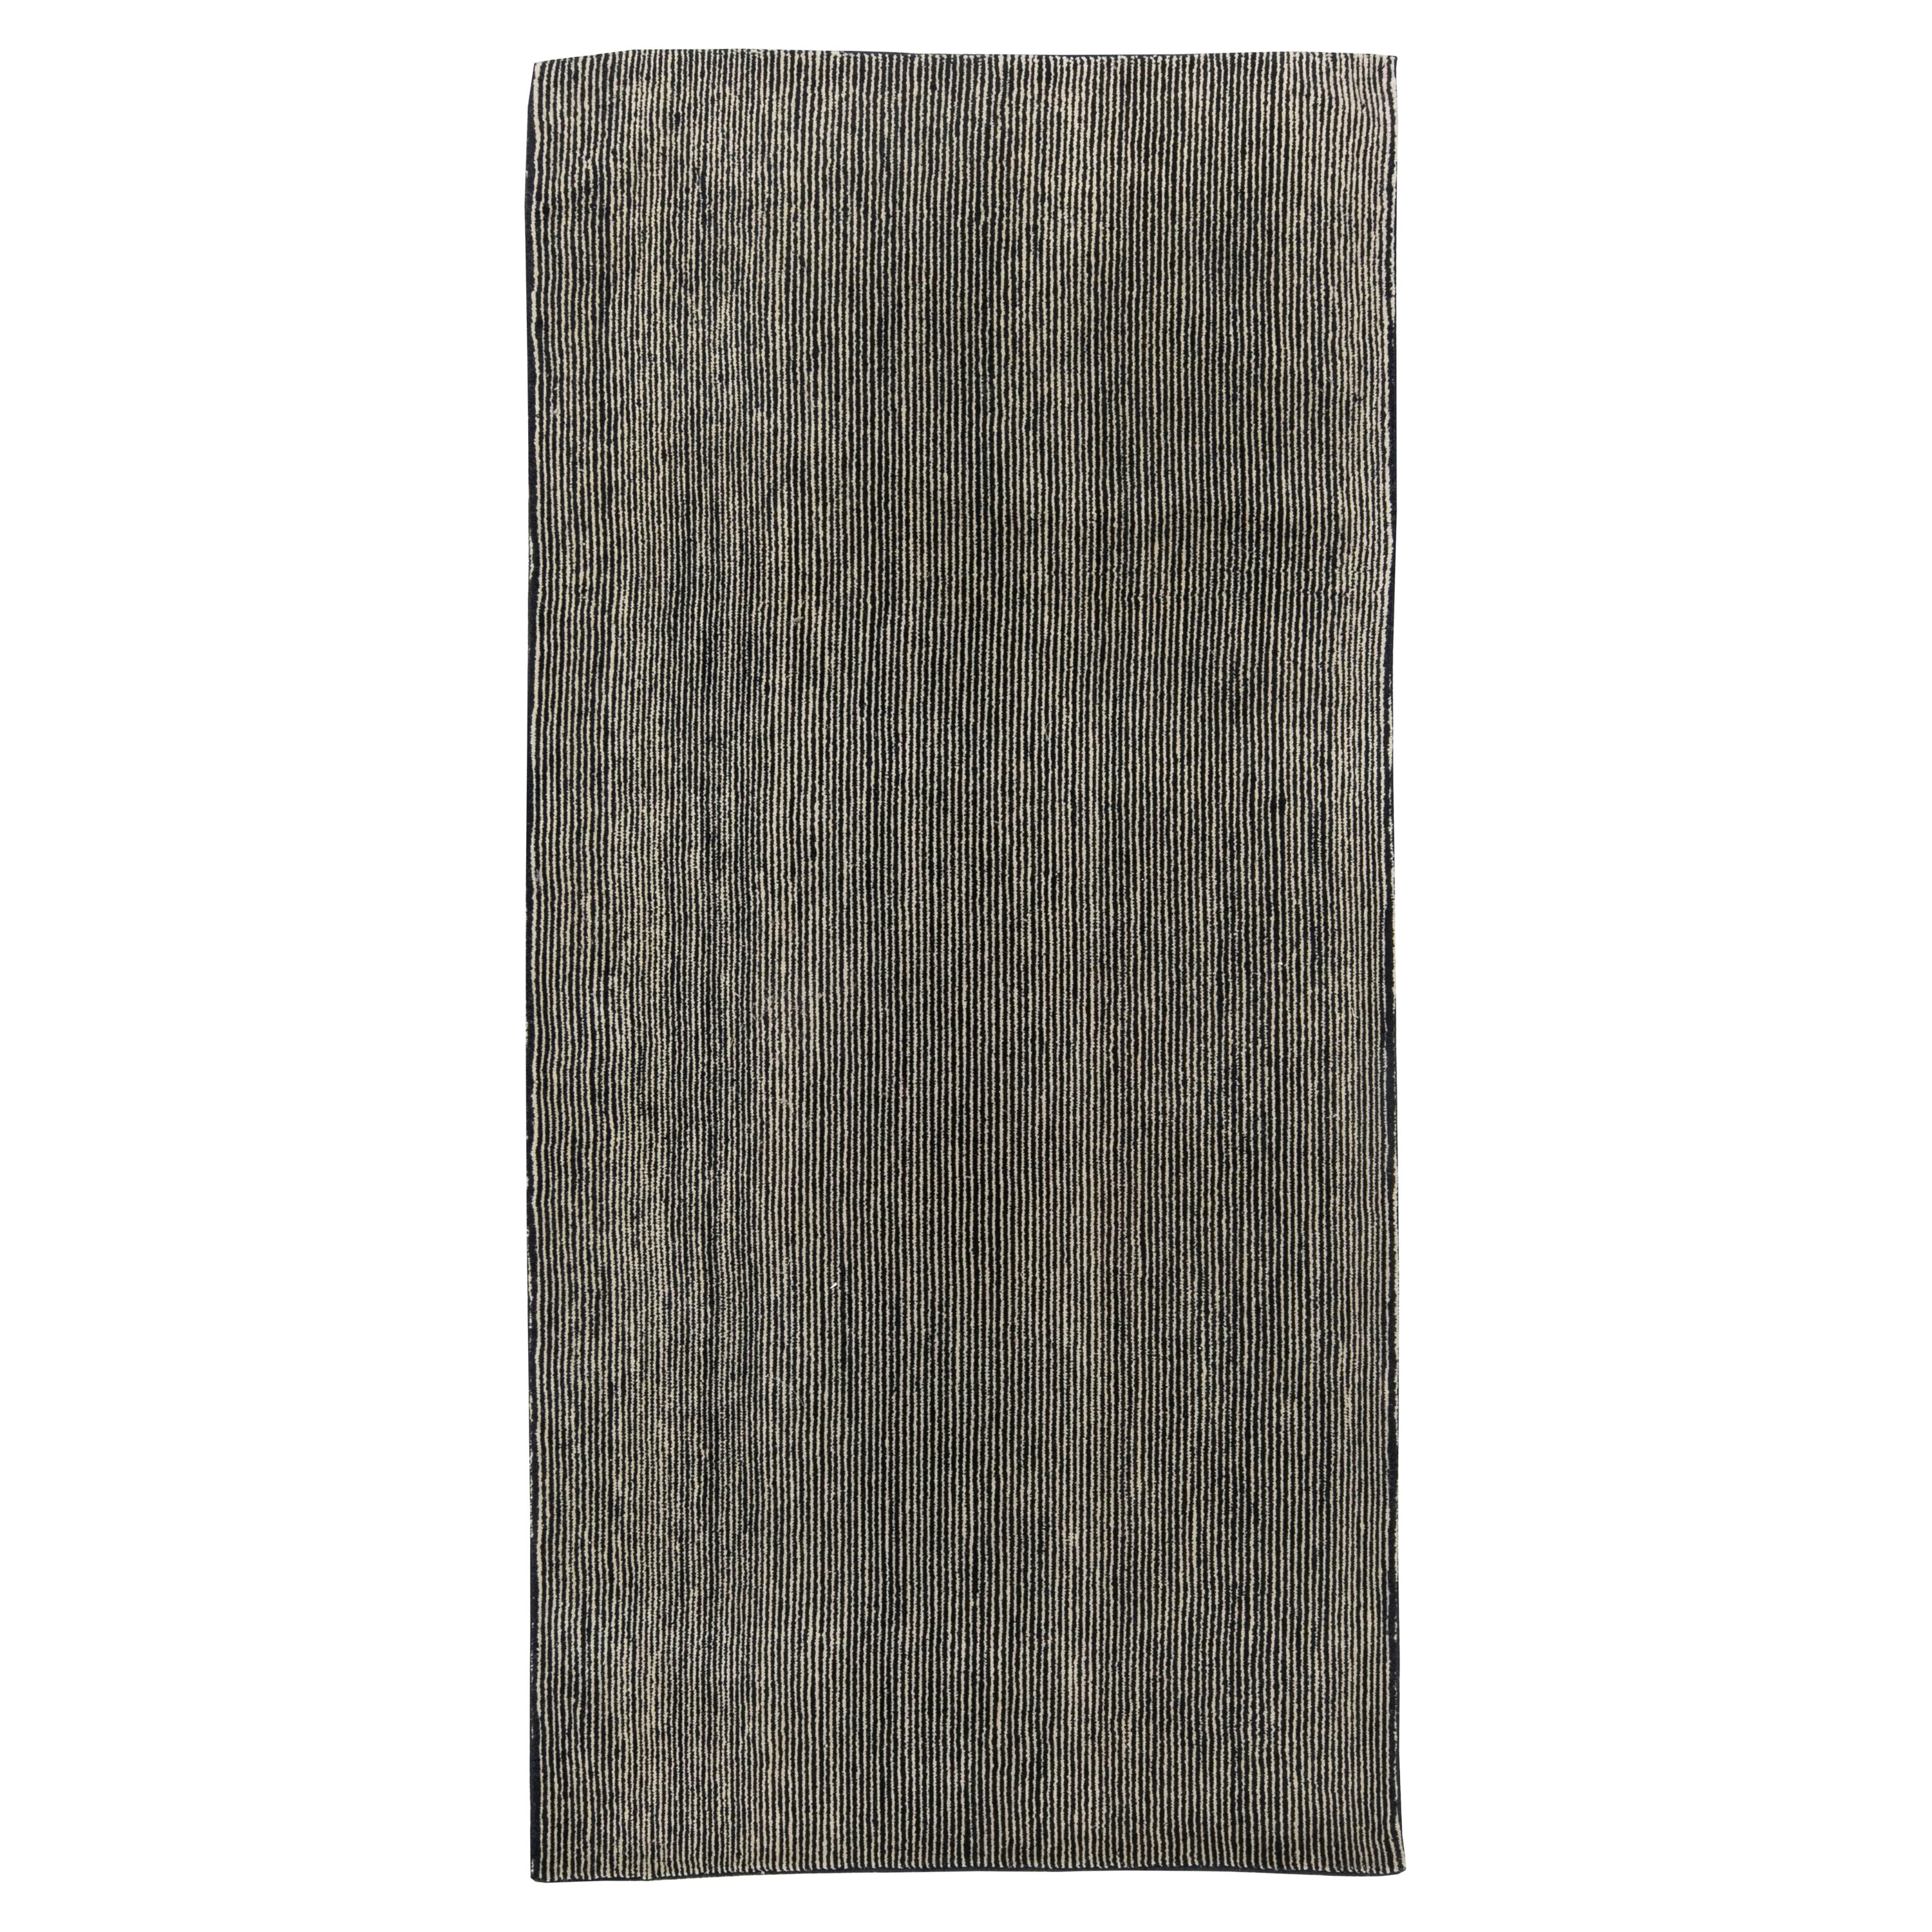 Zeitgenössischer gestreifter grauer handgefertigter Teppich von Doris Leslie Blau in hoher Qualität